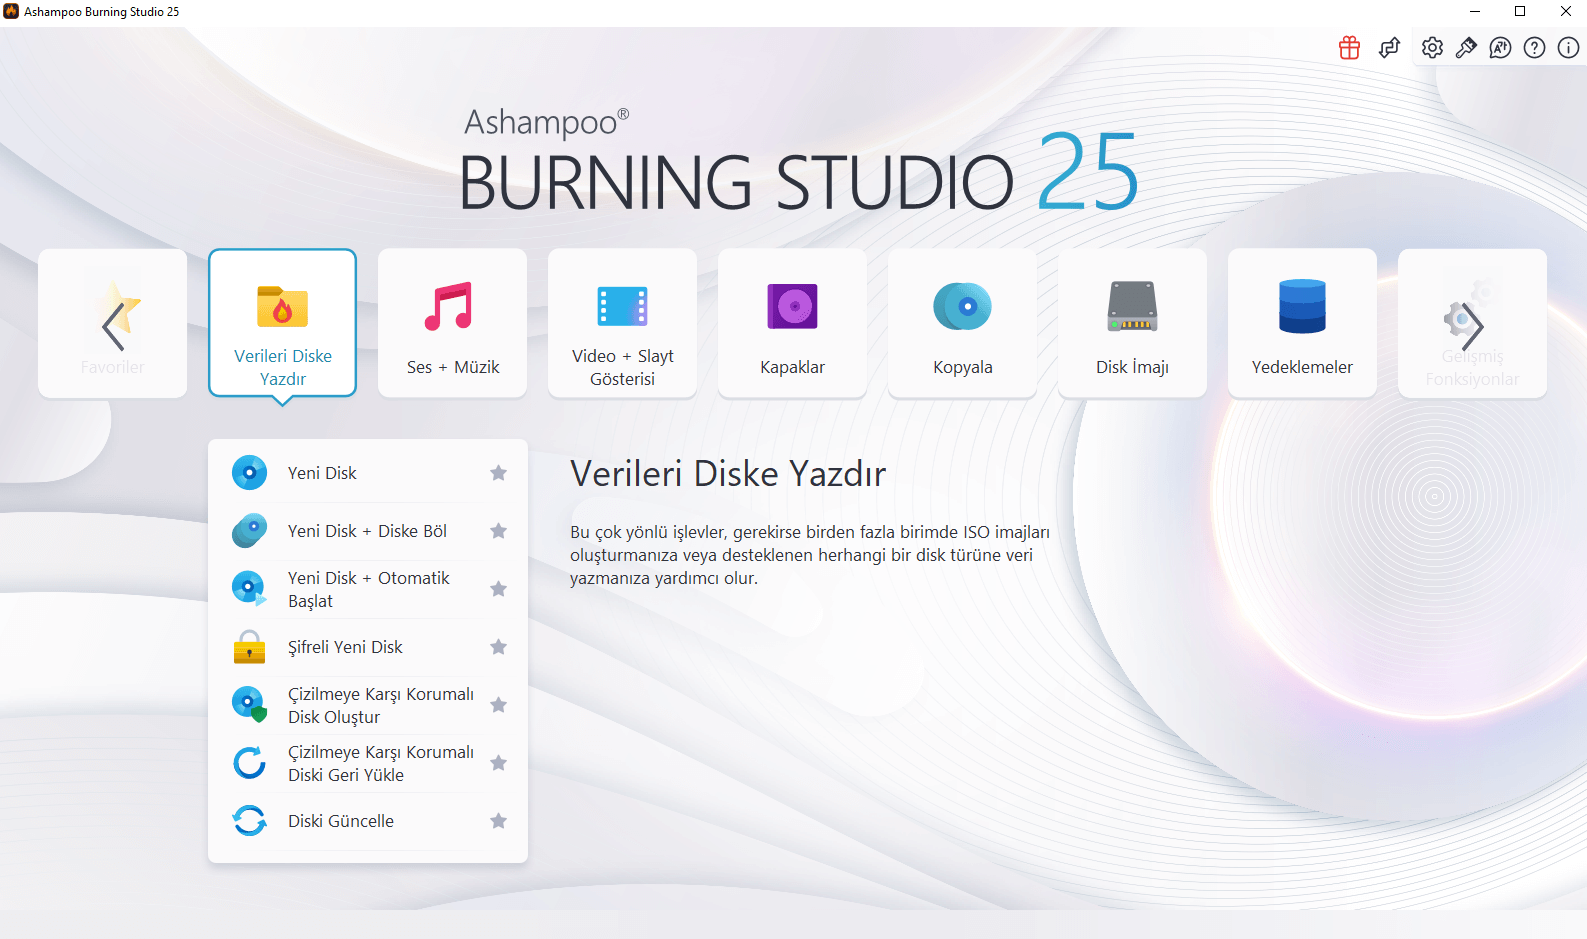 Ashampoo Burning Studio 25 - Design 